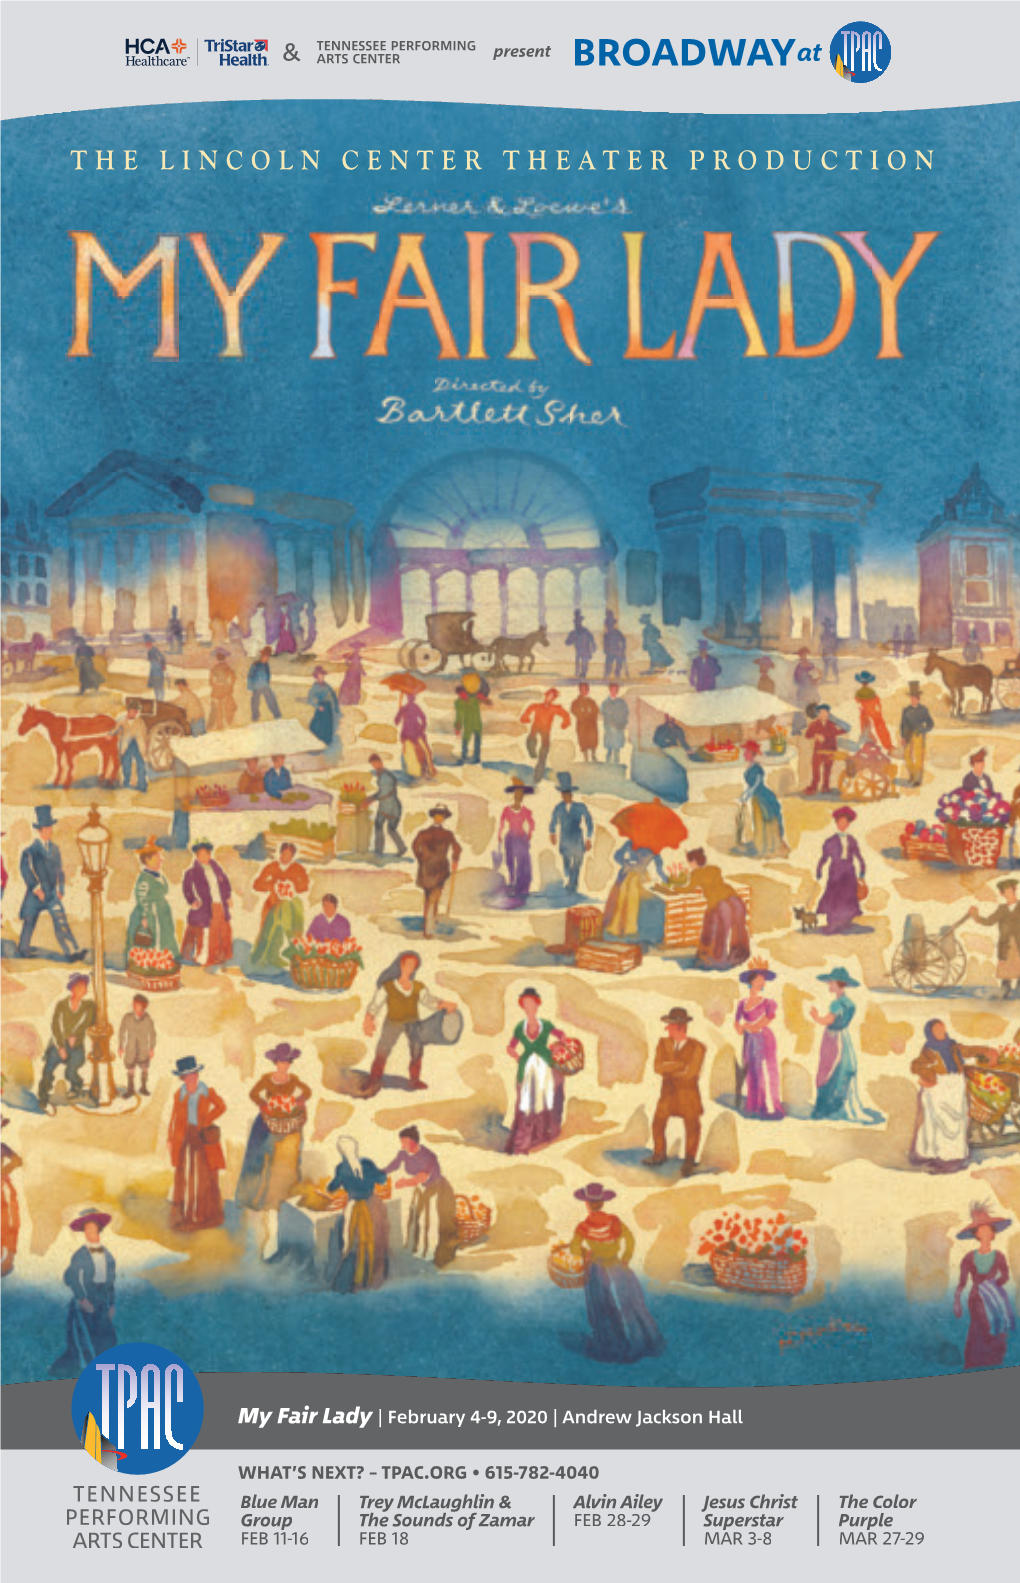 My Fair Lady | February 4-9, 2020 | Andrew Jackson Hall